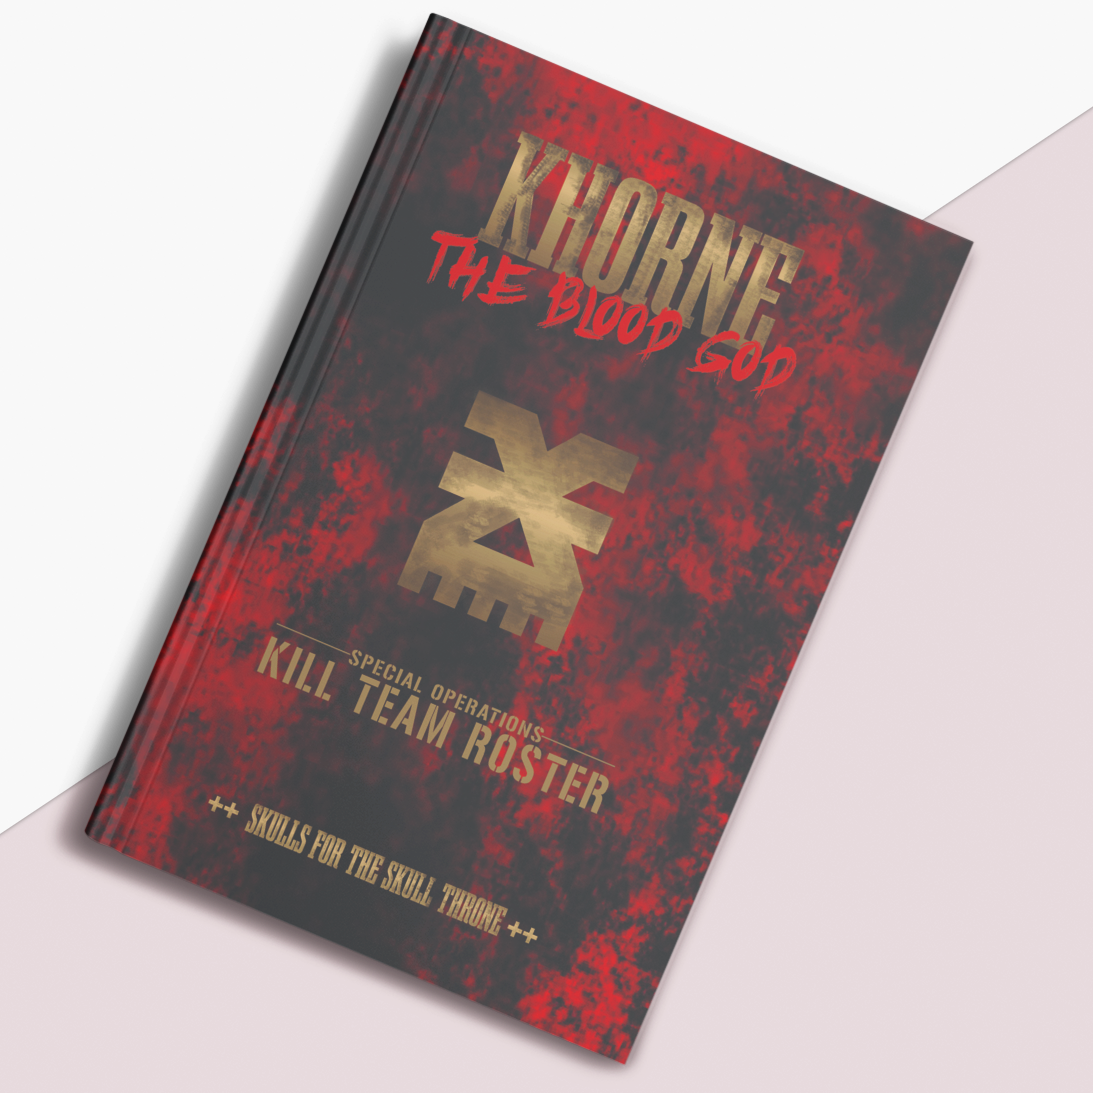 Khorne | Kill Team Roster | WH 40k